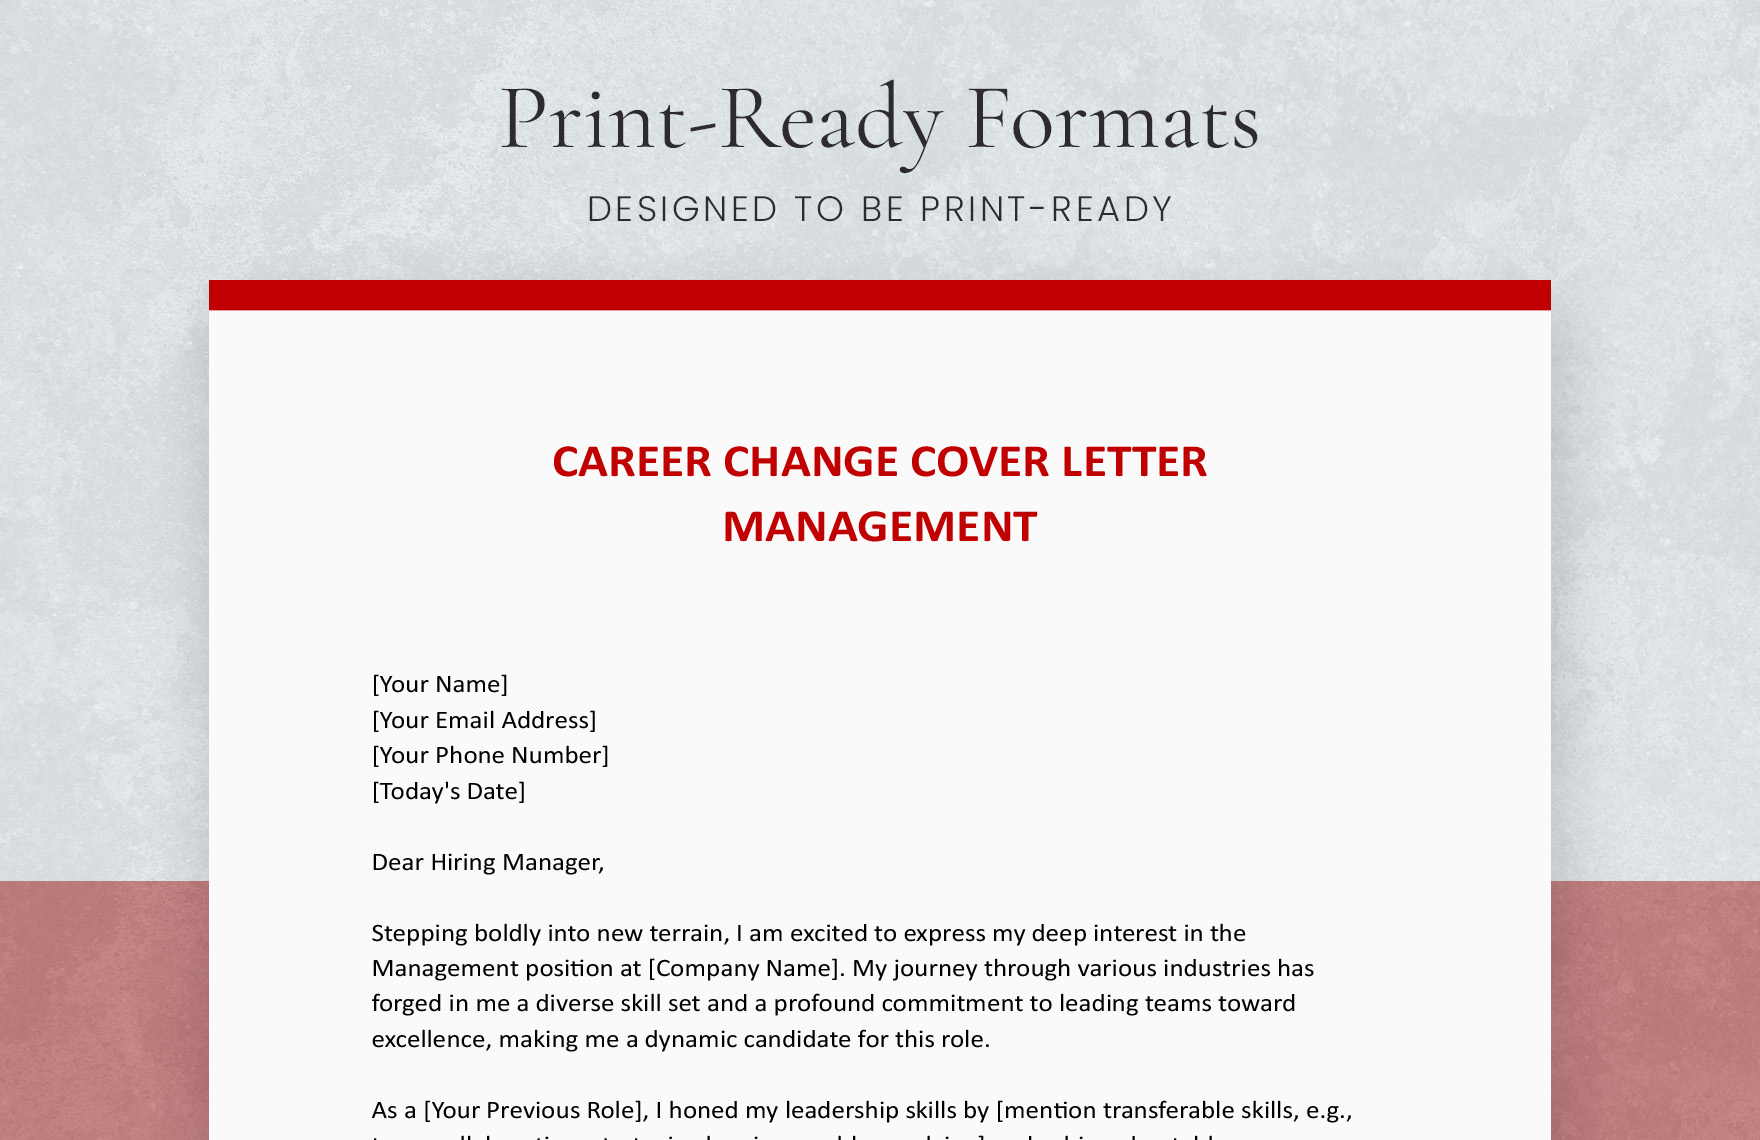 Career Change Cover Letter Management